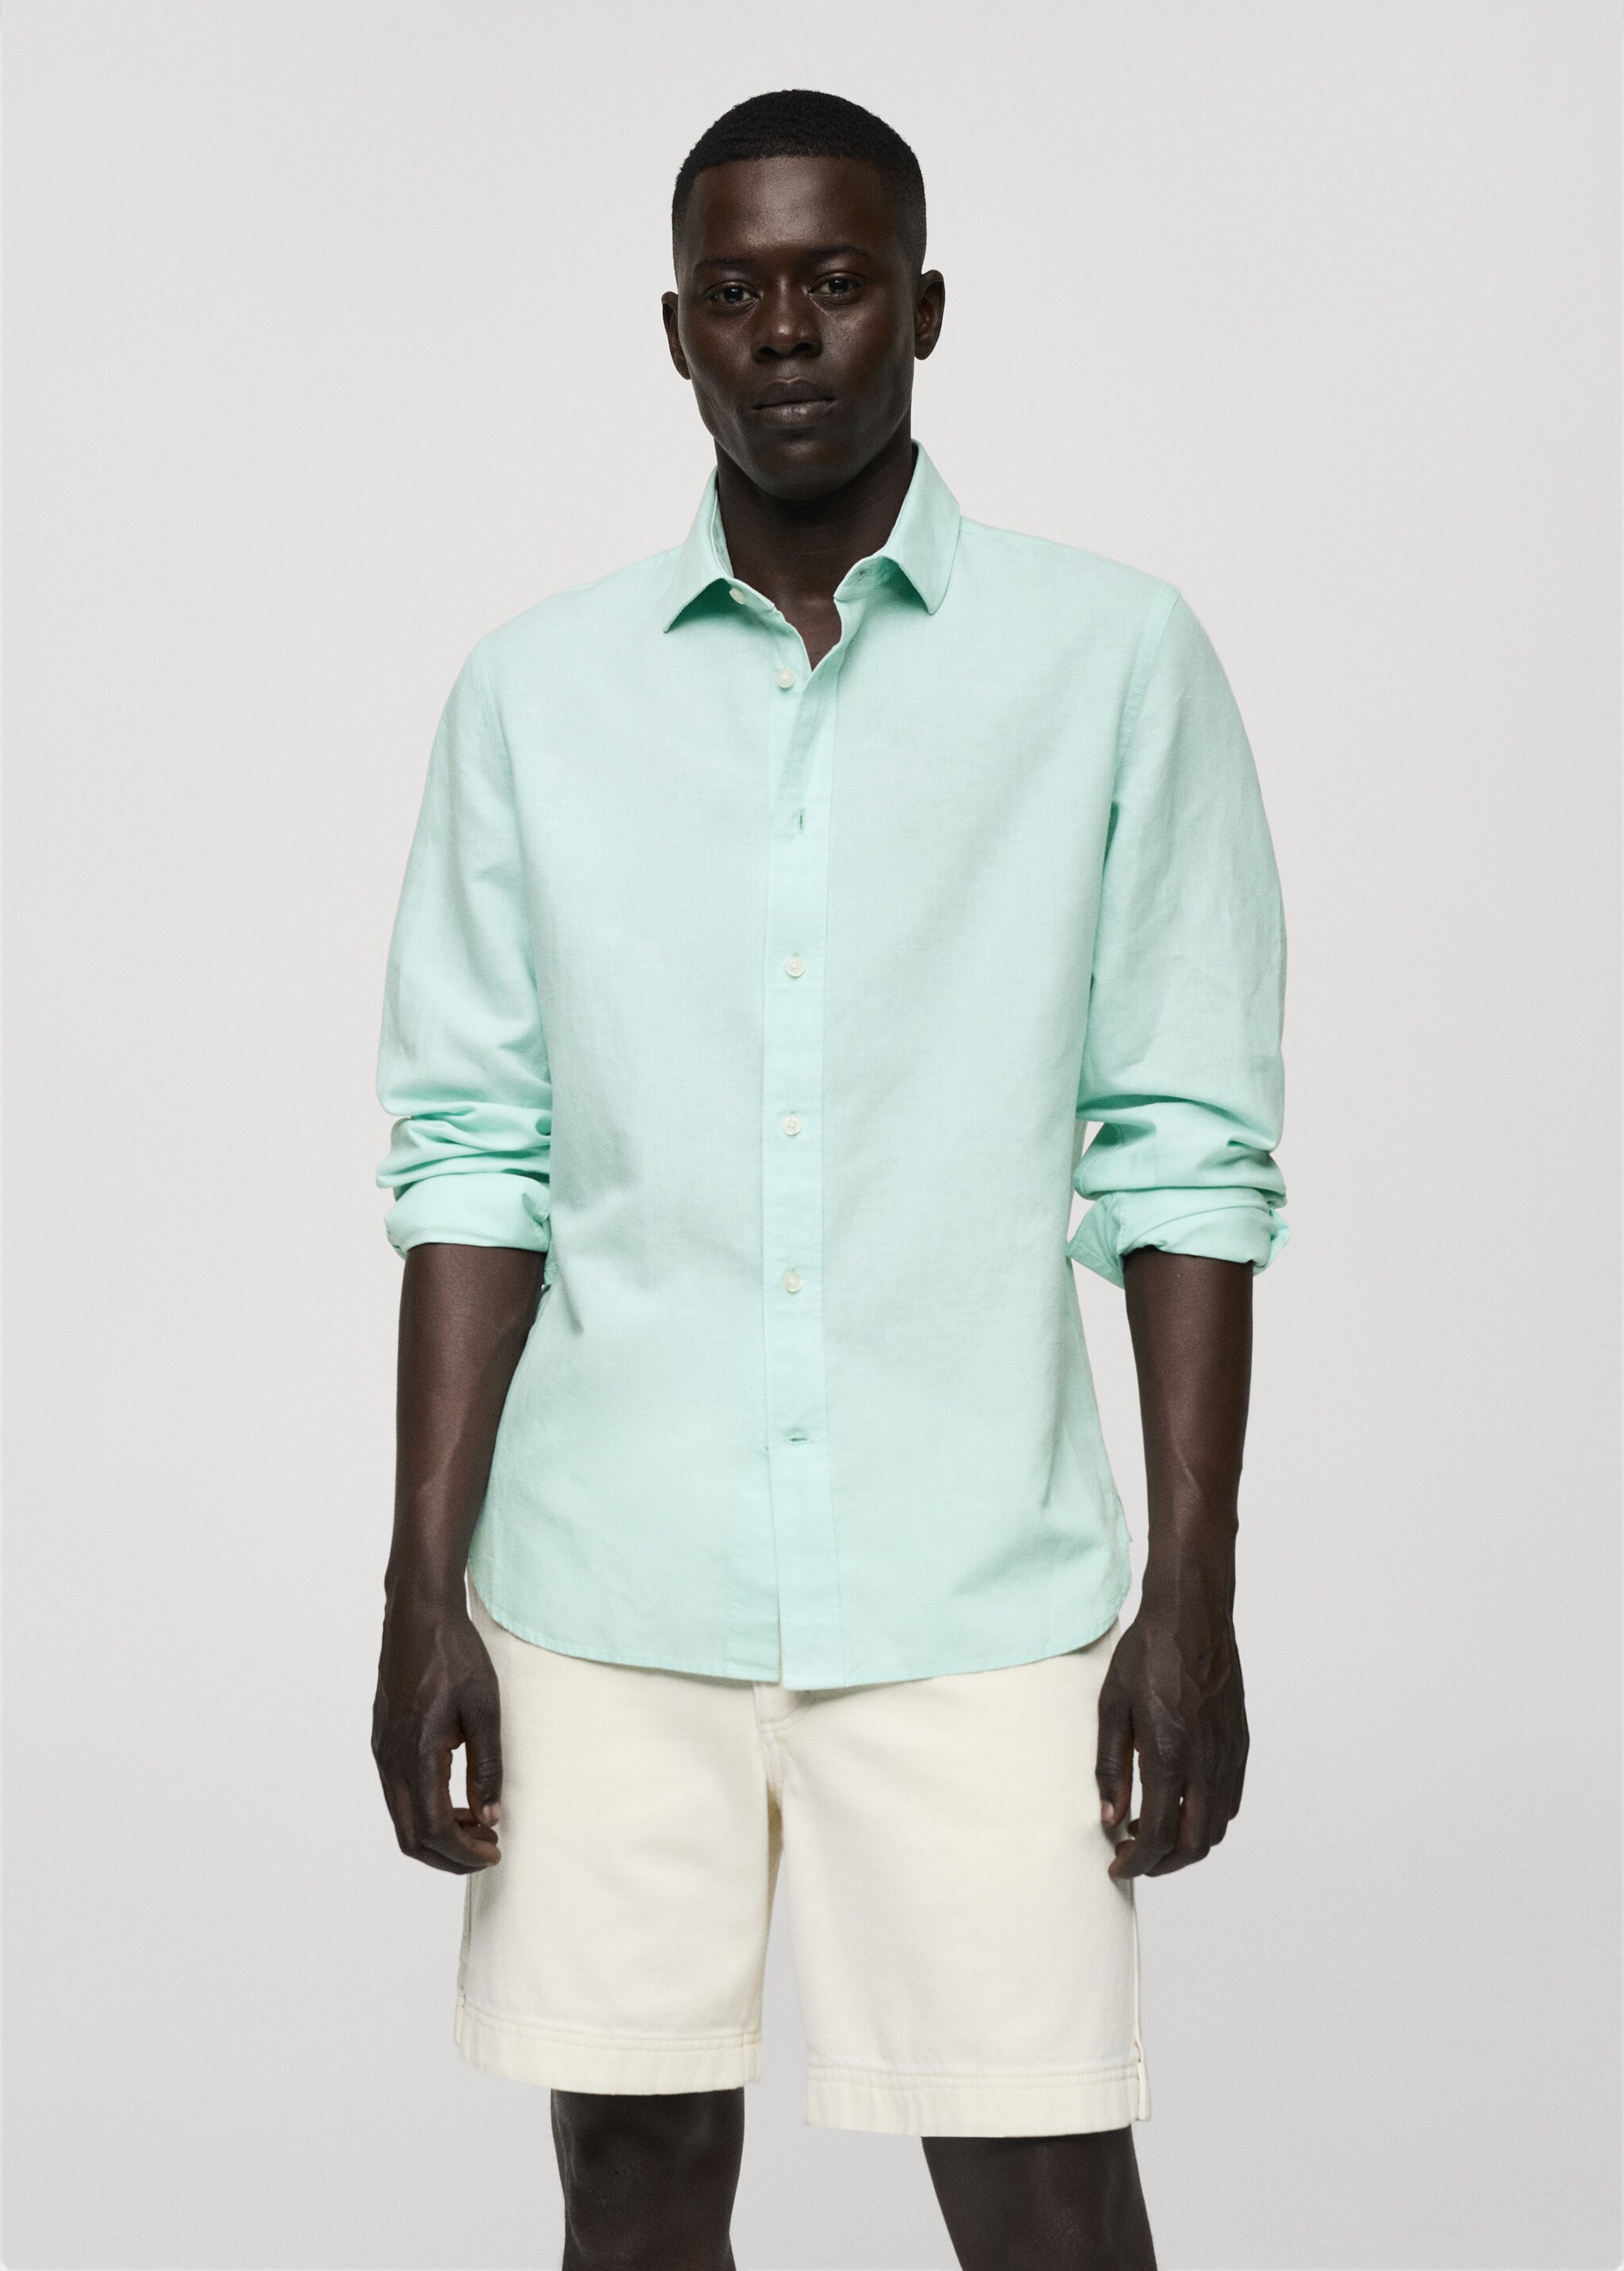 Classic fit linen blend shirt - Medium plane